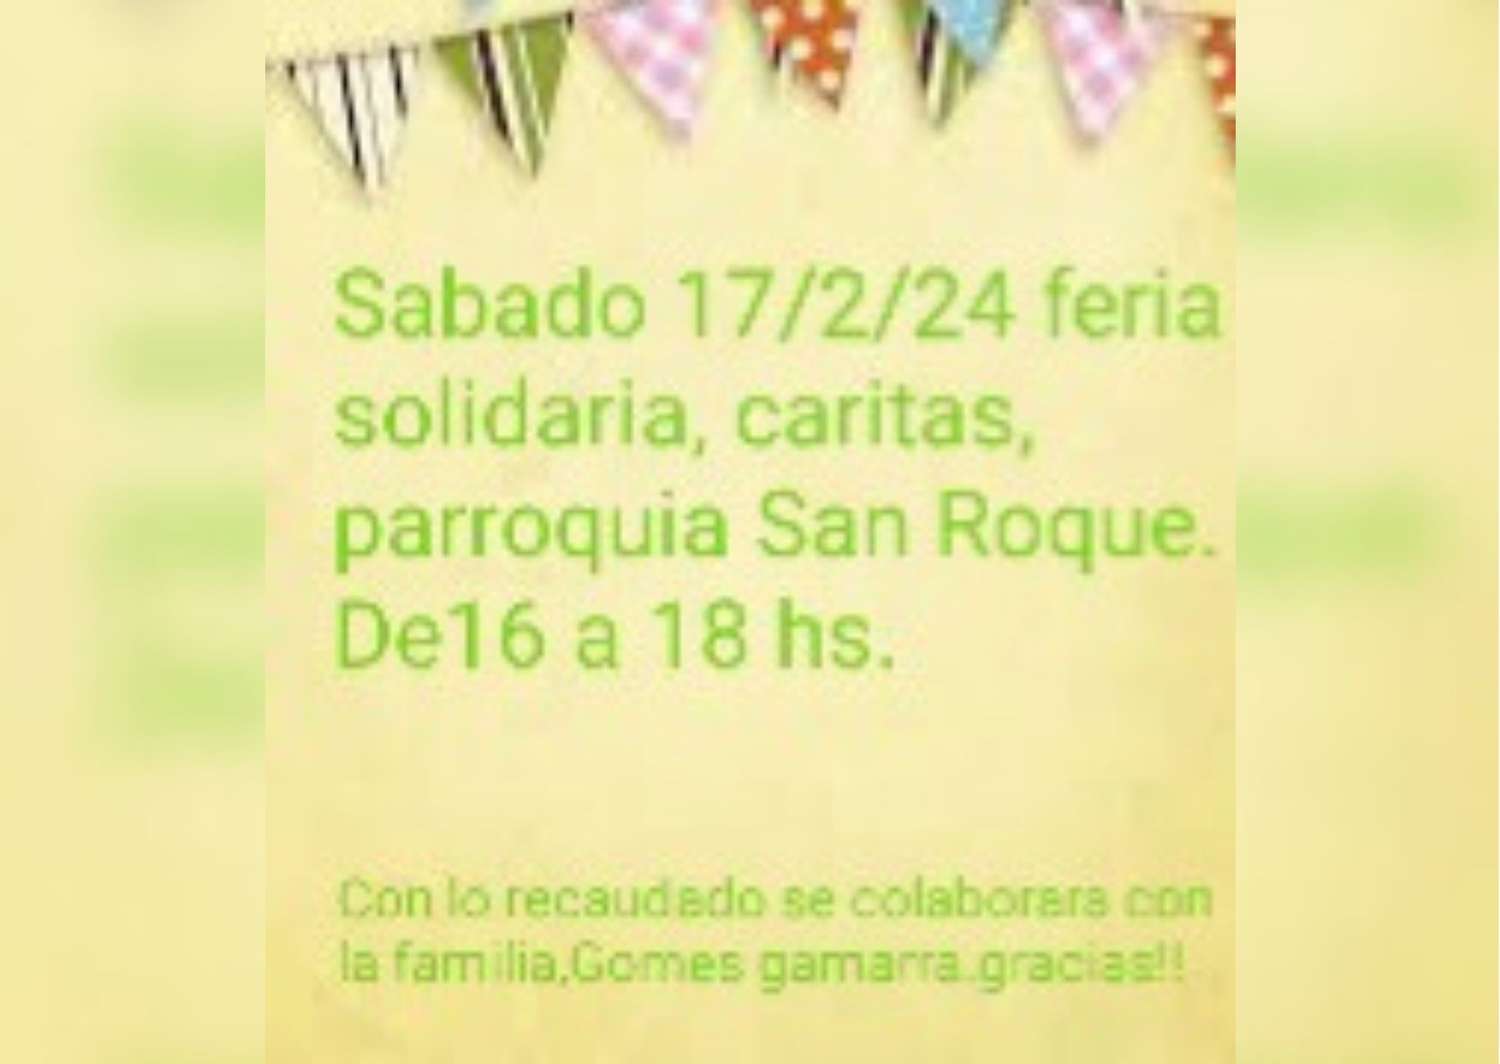 Feria solidaria en la parroquia San Roque